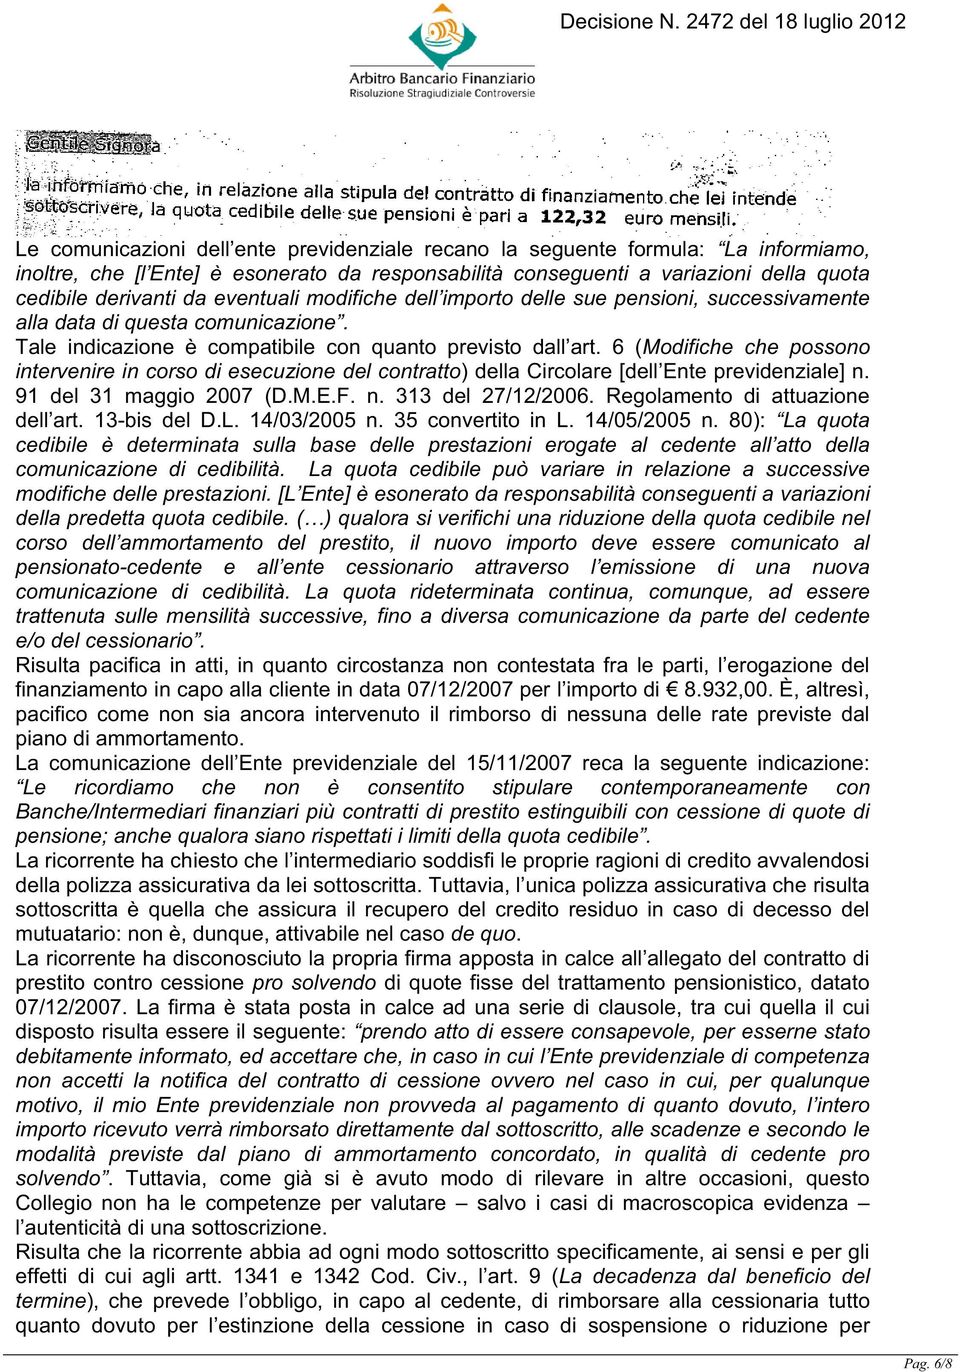 6 (Modifiche che possono intervenire in corso di esecuzione del contratto) della Circolare [dell Ente previdenziale] n. 91 del 31 maggio 2007 (D.M.E.F. n. 313 del 27/12/2006.